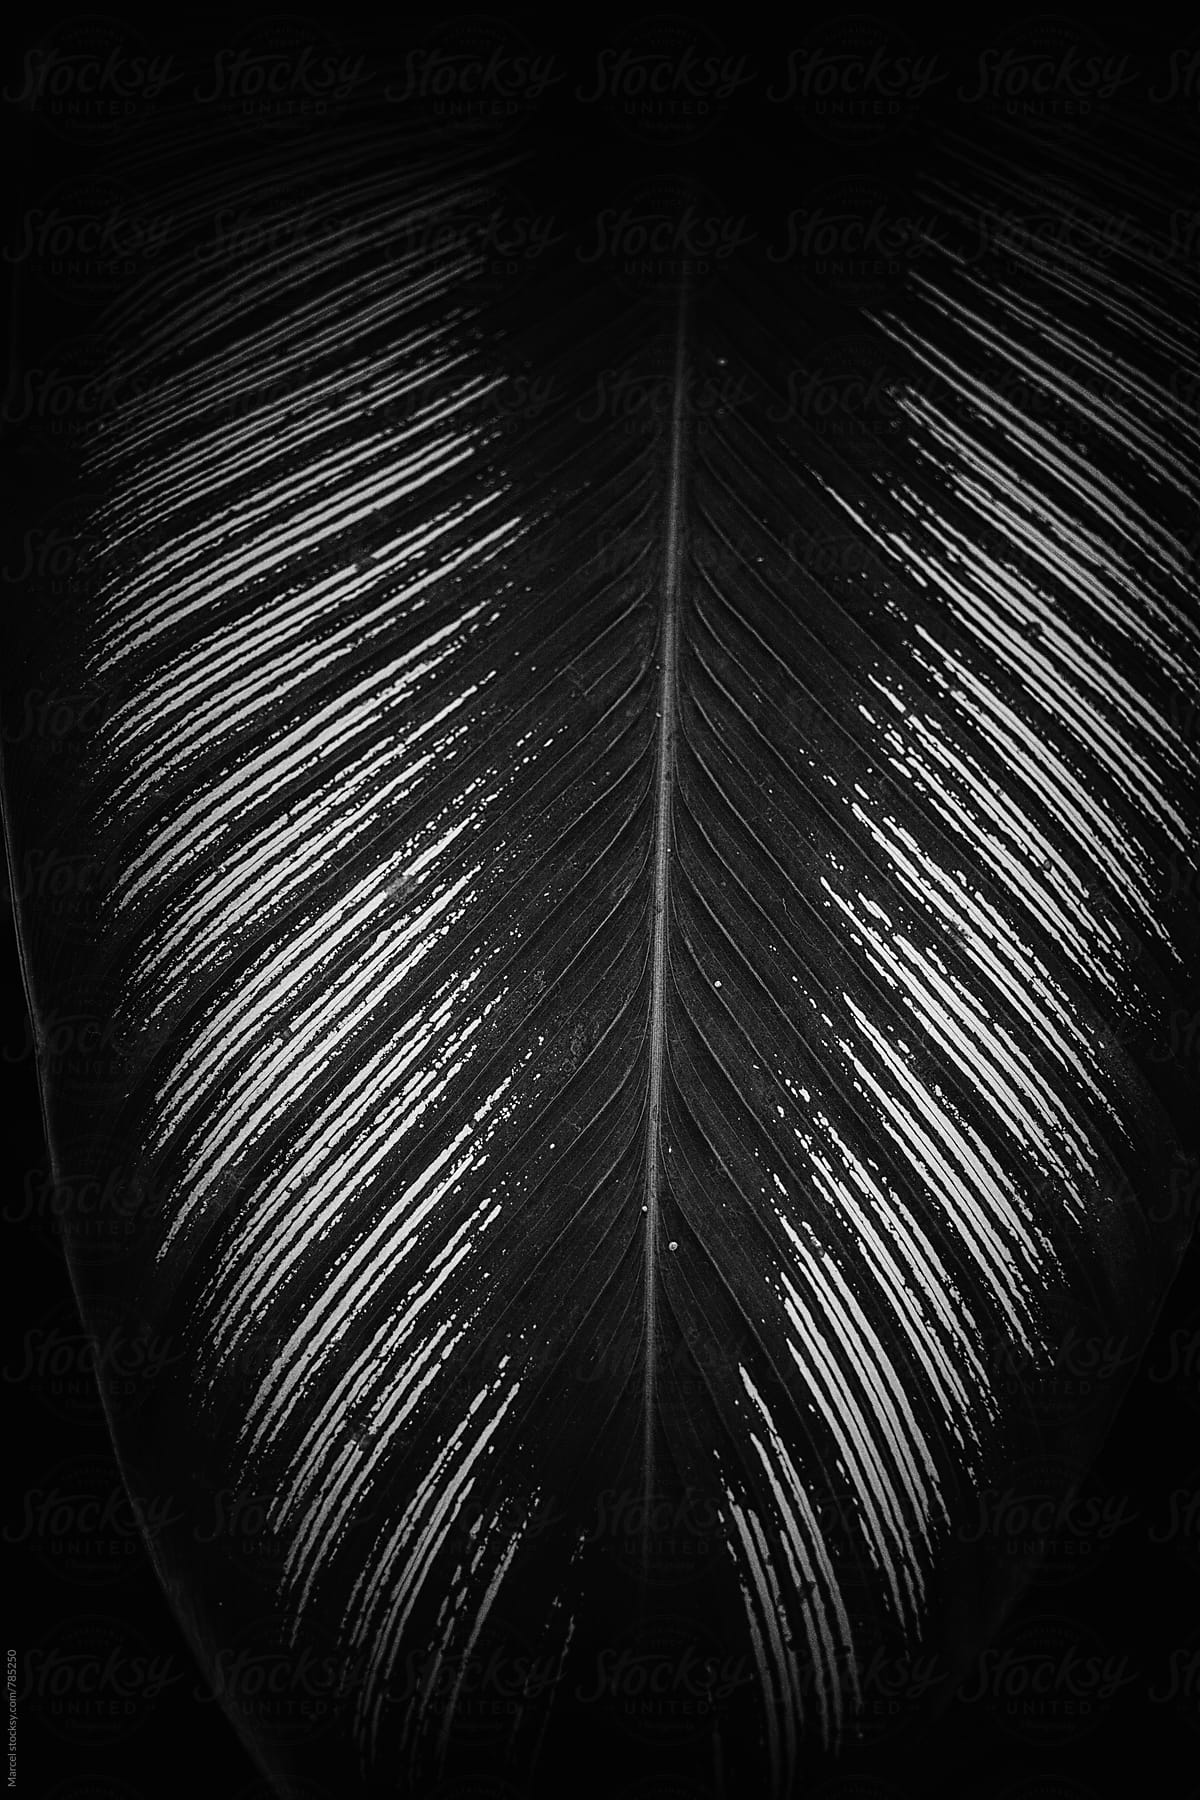 Dark b&w of an exotic palm leaf